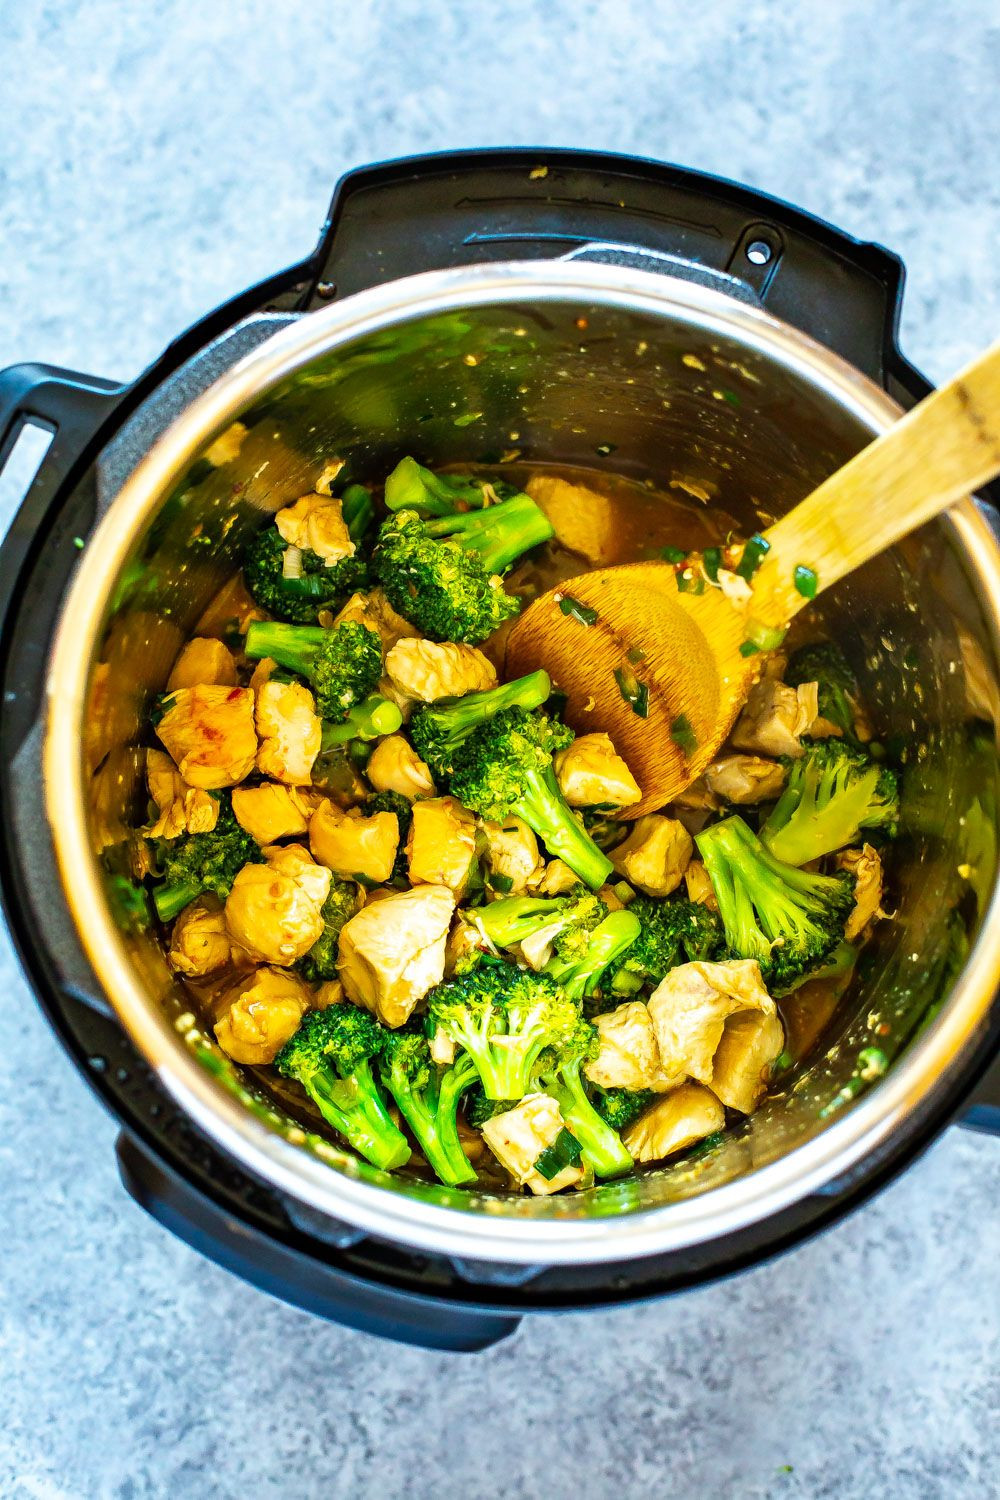 Instapot Keto Chicken And Broccoli Recipes This Instant Pot Chinese Chicken and Broccoli is a healthy